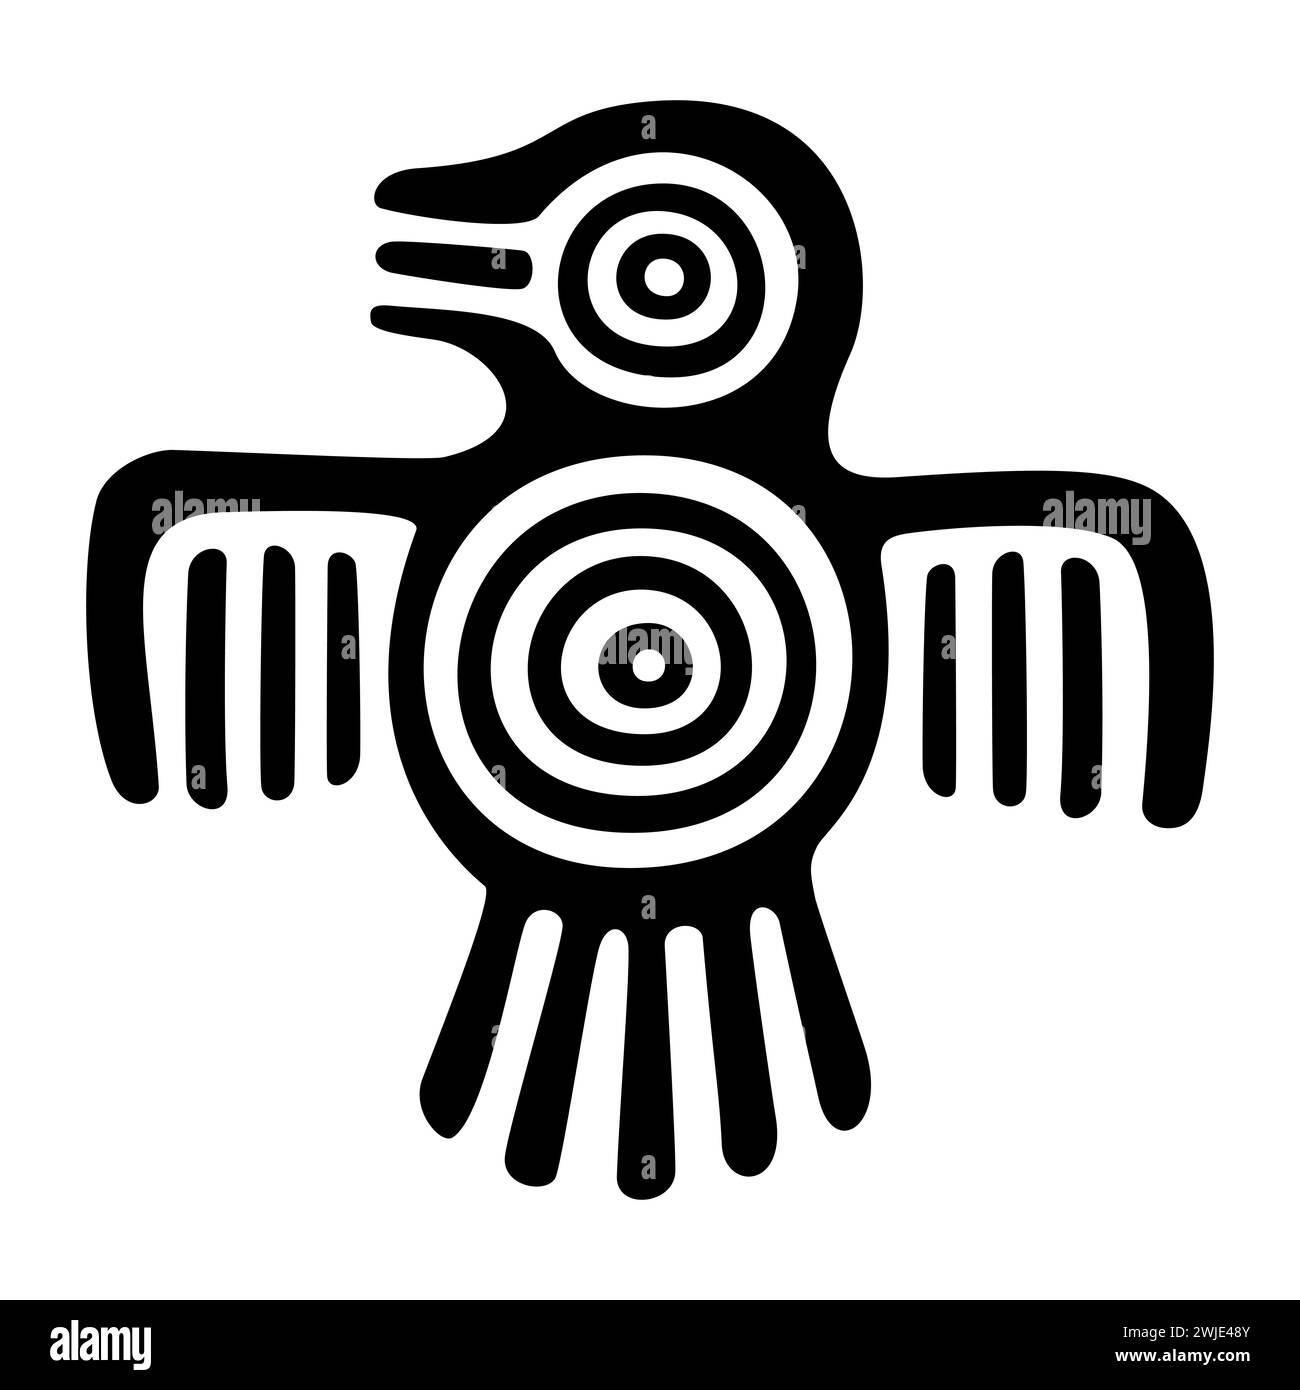 Fantastico uccello simbolo dell'antico Messico. Motivo a francobollo piatto azteco, che mostra un uccello, come è stato trovato a Tenochtitlan, il centro storico di città del Messico. Foto Stock